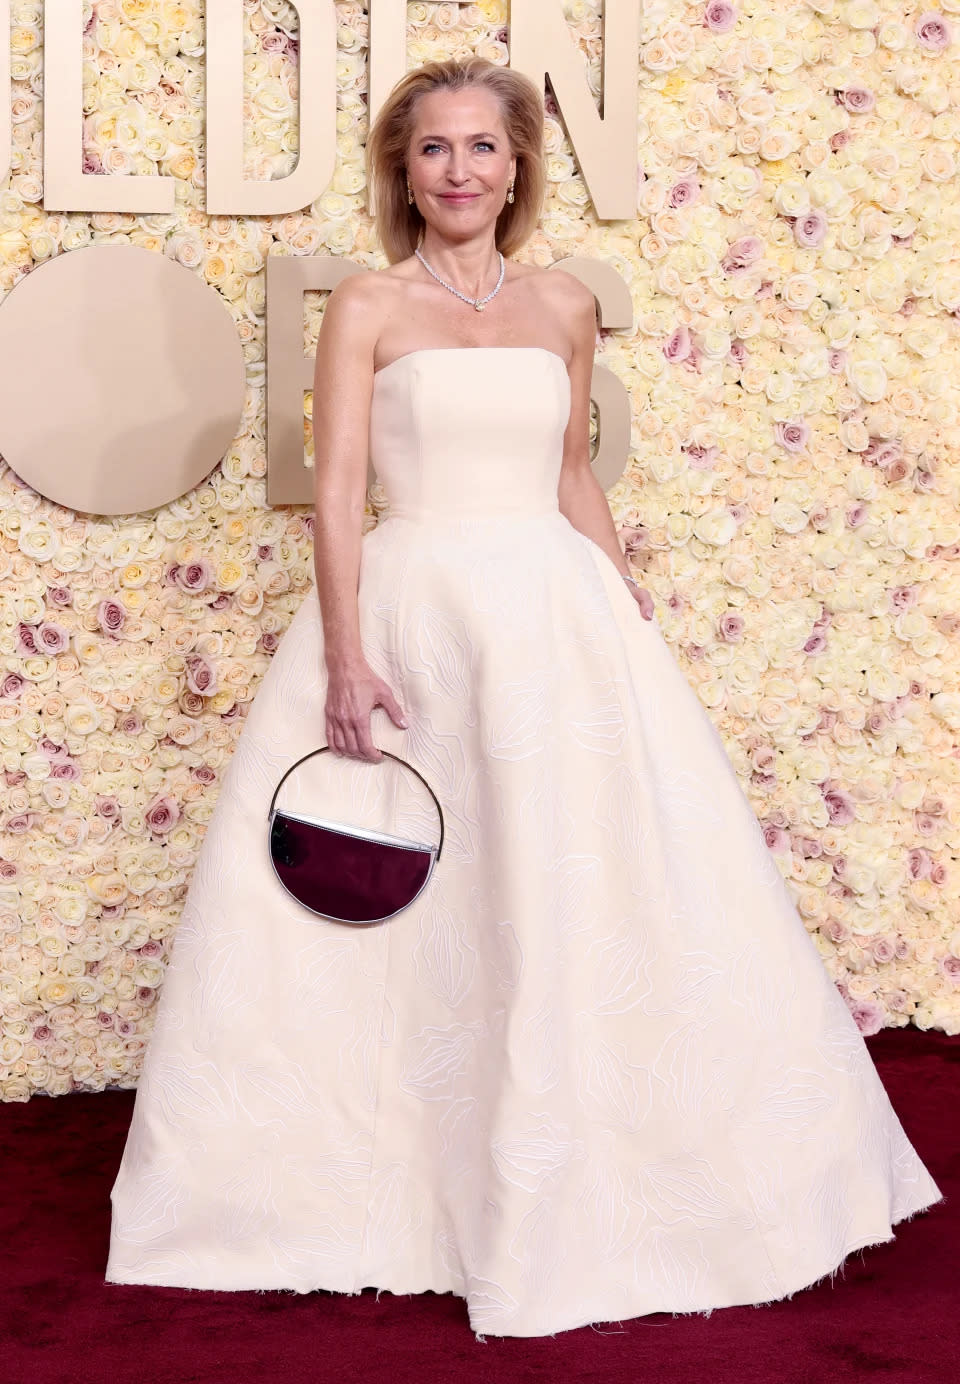 Gillian Andersons Kleid hatte sehr interessante, nicht jugendfreie Verzierungen – Vaginen! Foto: Getty